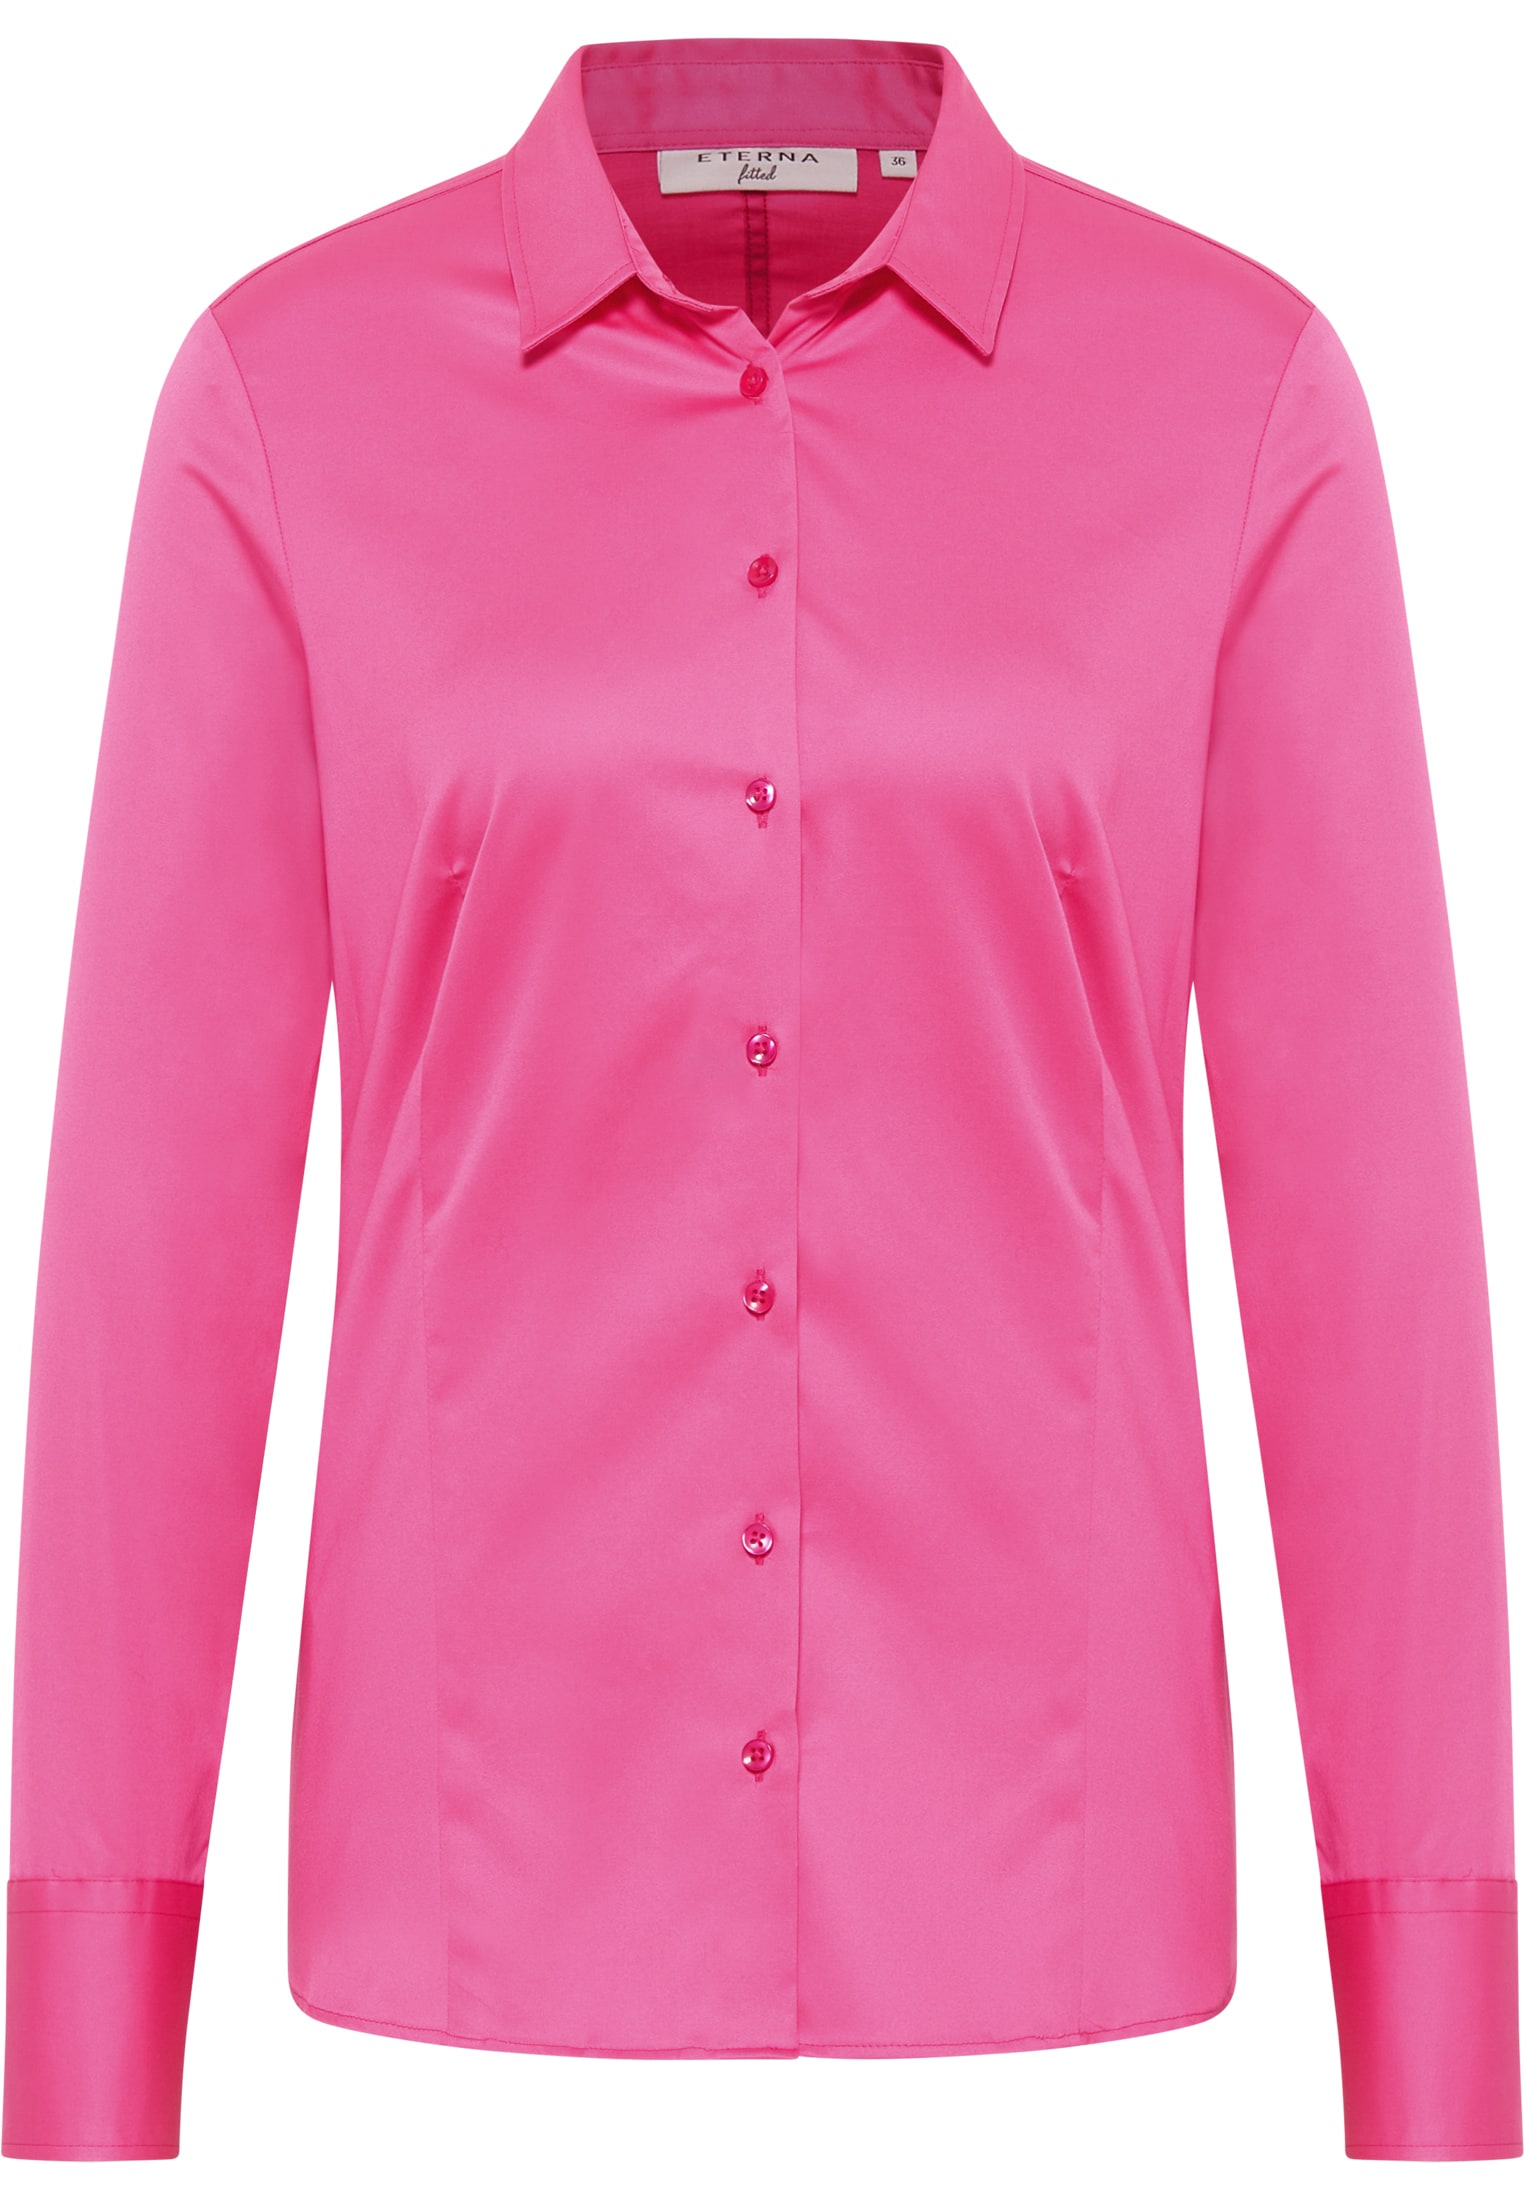 in Shirt 2BL04012-15-21-36-1/1 | 36 Langarm Bluse pink | | Satin unifarben pink |